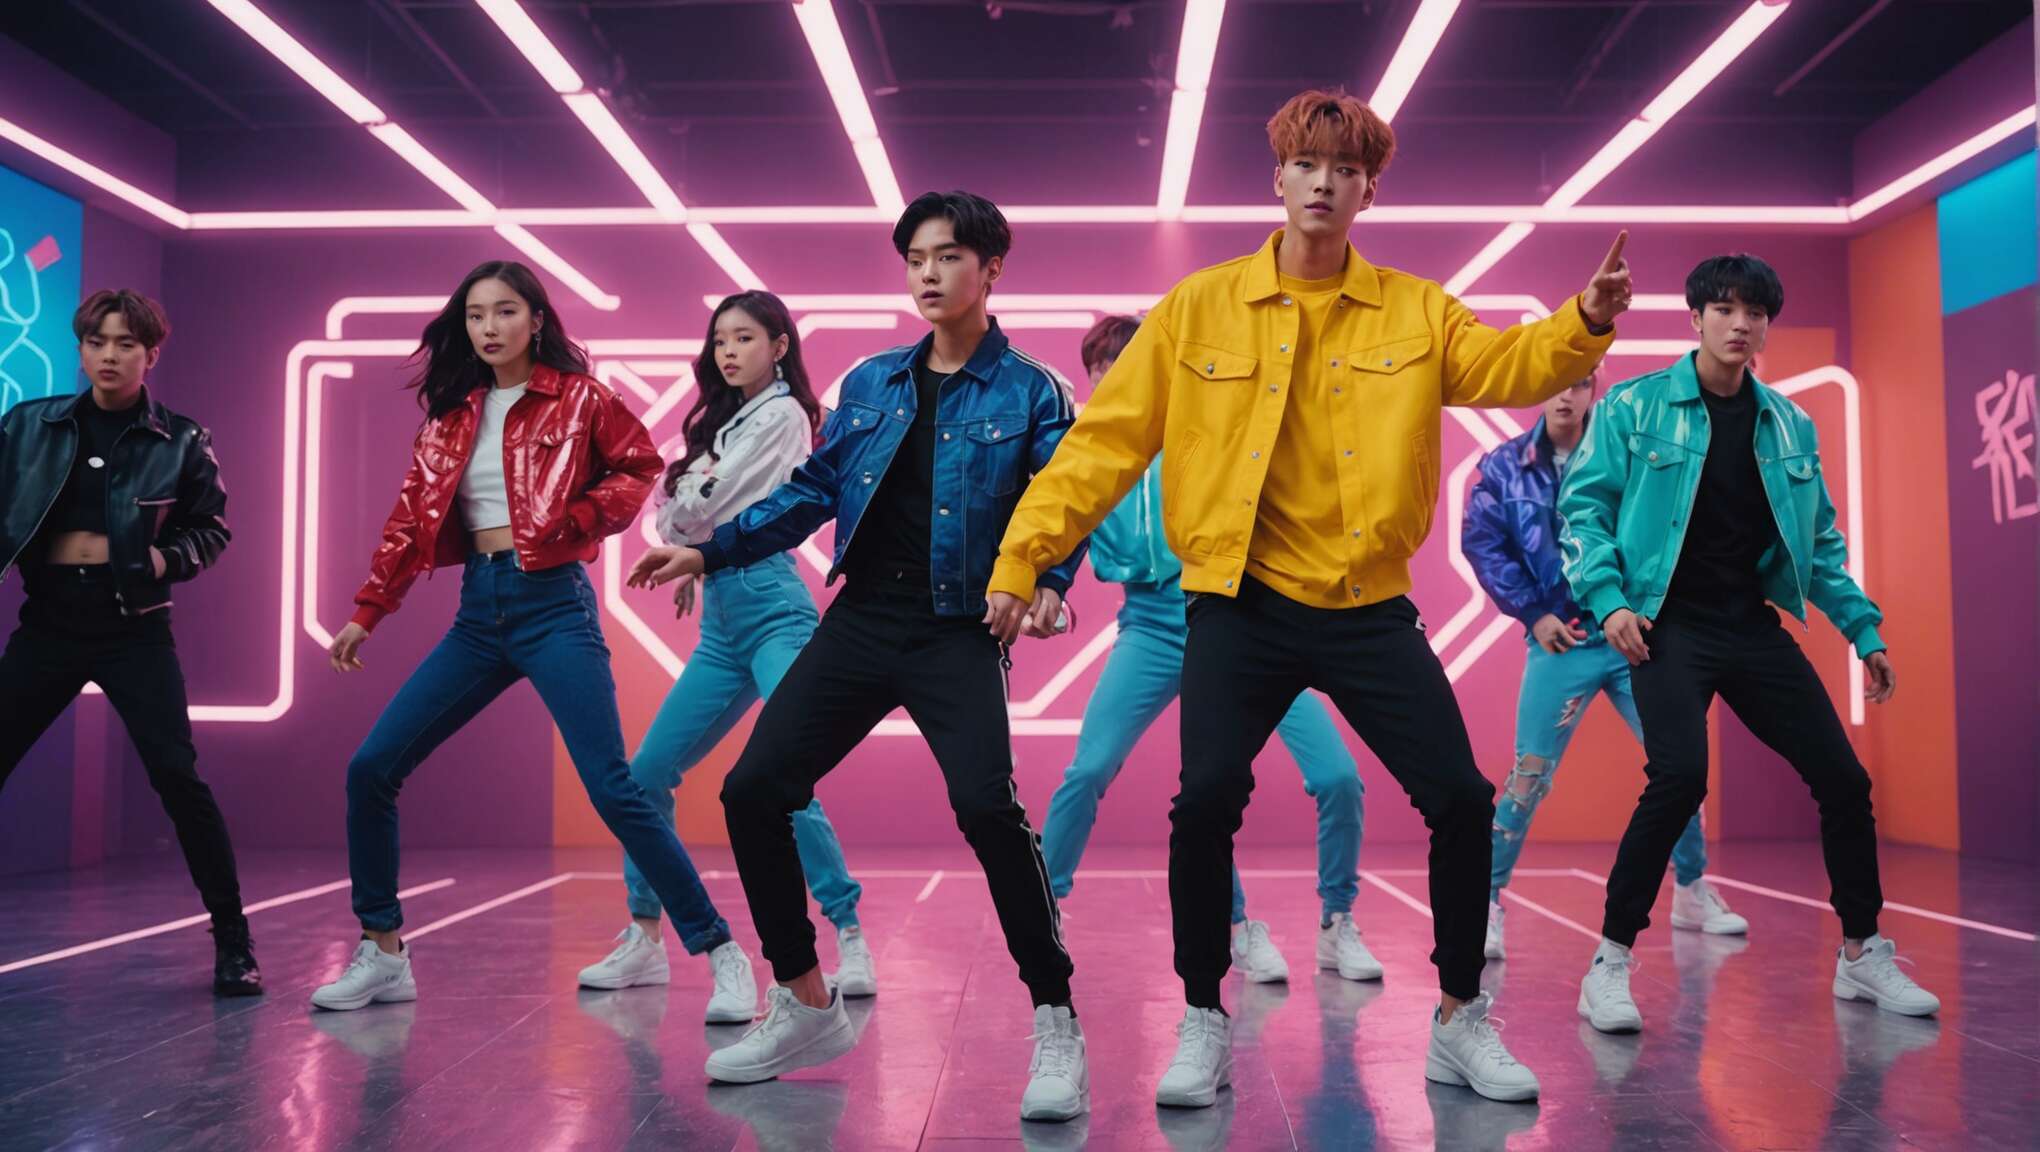 Les clips musicaux en k-pop : entre art visuel et stratégies marketing